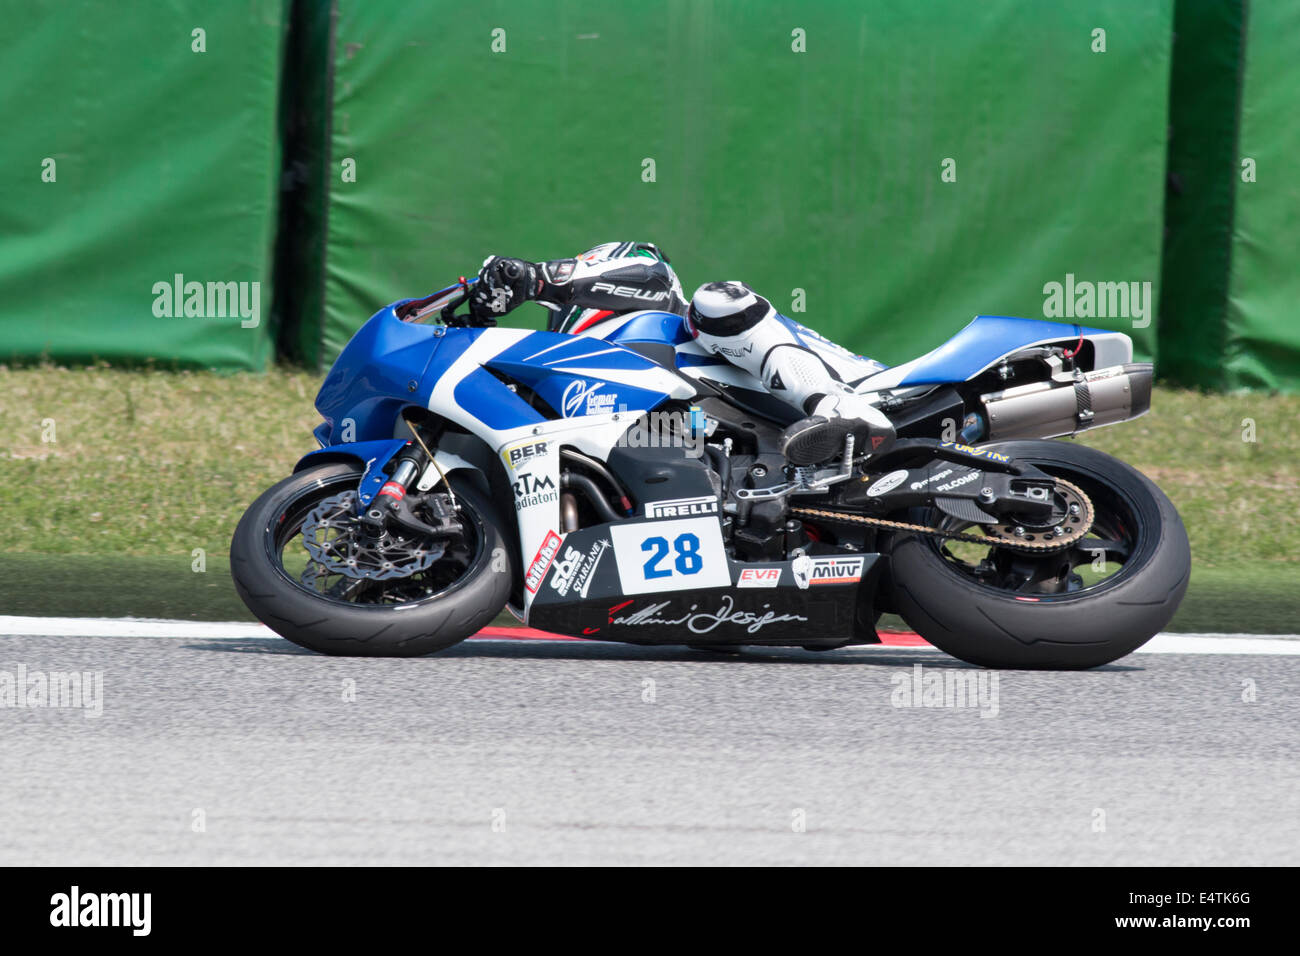 MISANO ADRIATICO, ITALY - JUNE 21: Honda CBR600RR of Honda CBR600RR, driven by LAMBORGHINI Ferruccio Stock Photo